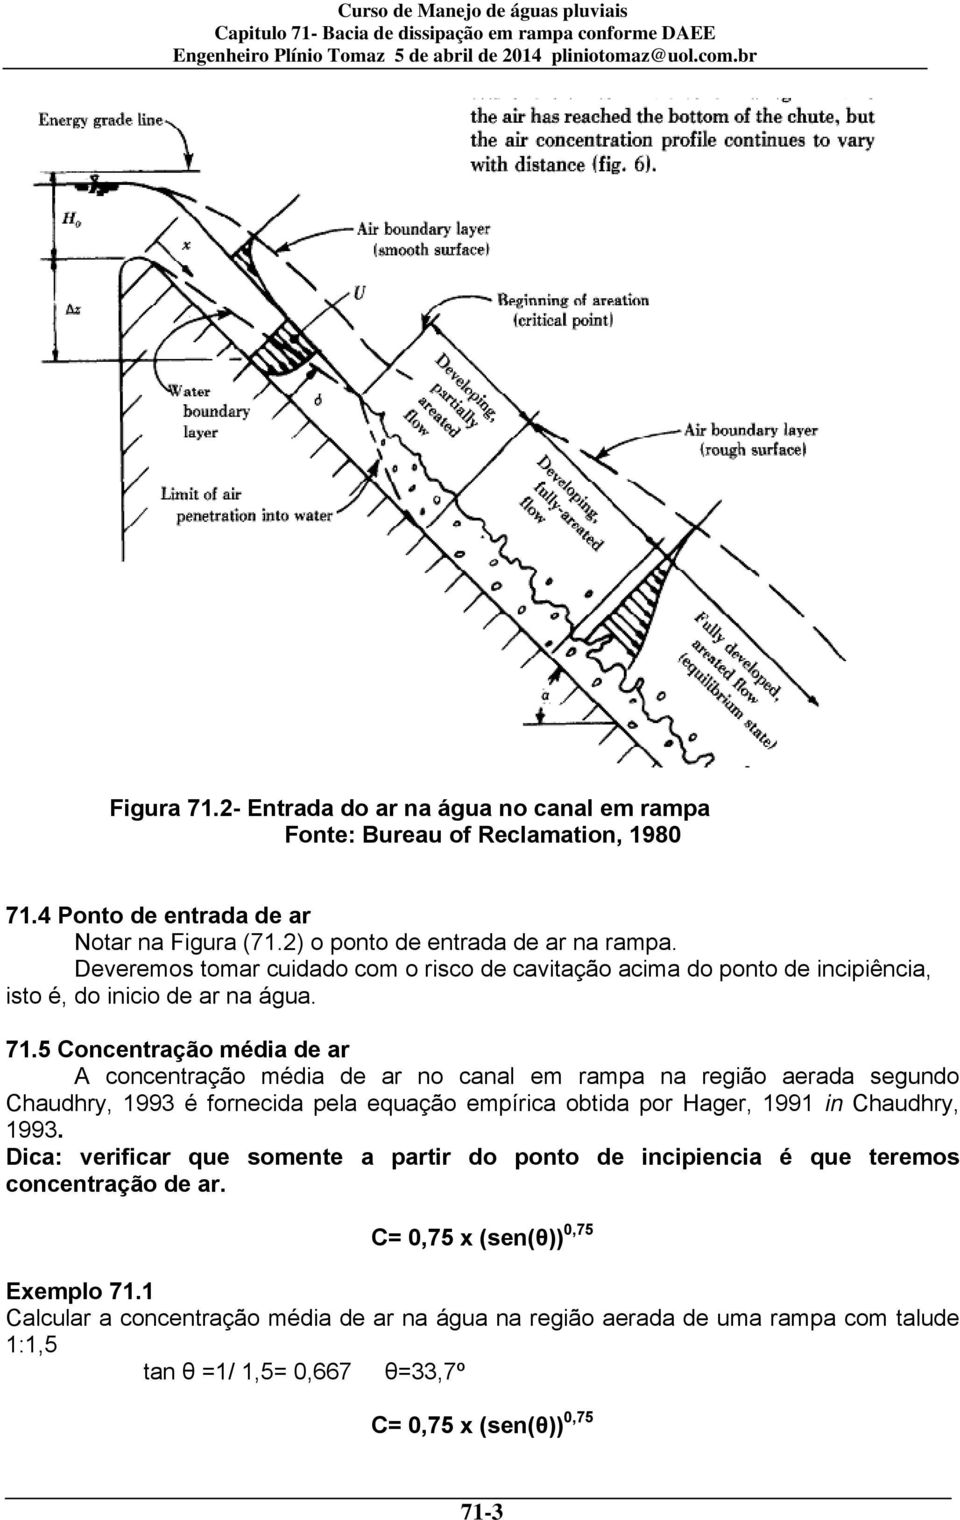 5 Concentração média de ar A concentração média de ar no canal em rampa na região aerada segundo Chaudhry, 1993 é fornecida pela equação empírica obtida por Hager, 1991 in Chaudhry, 1993.